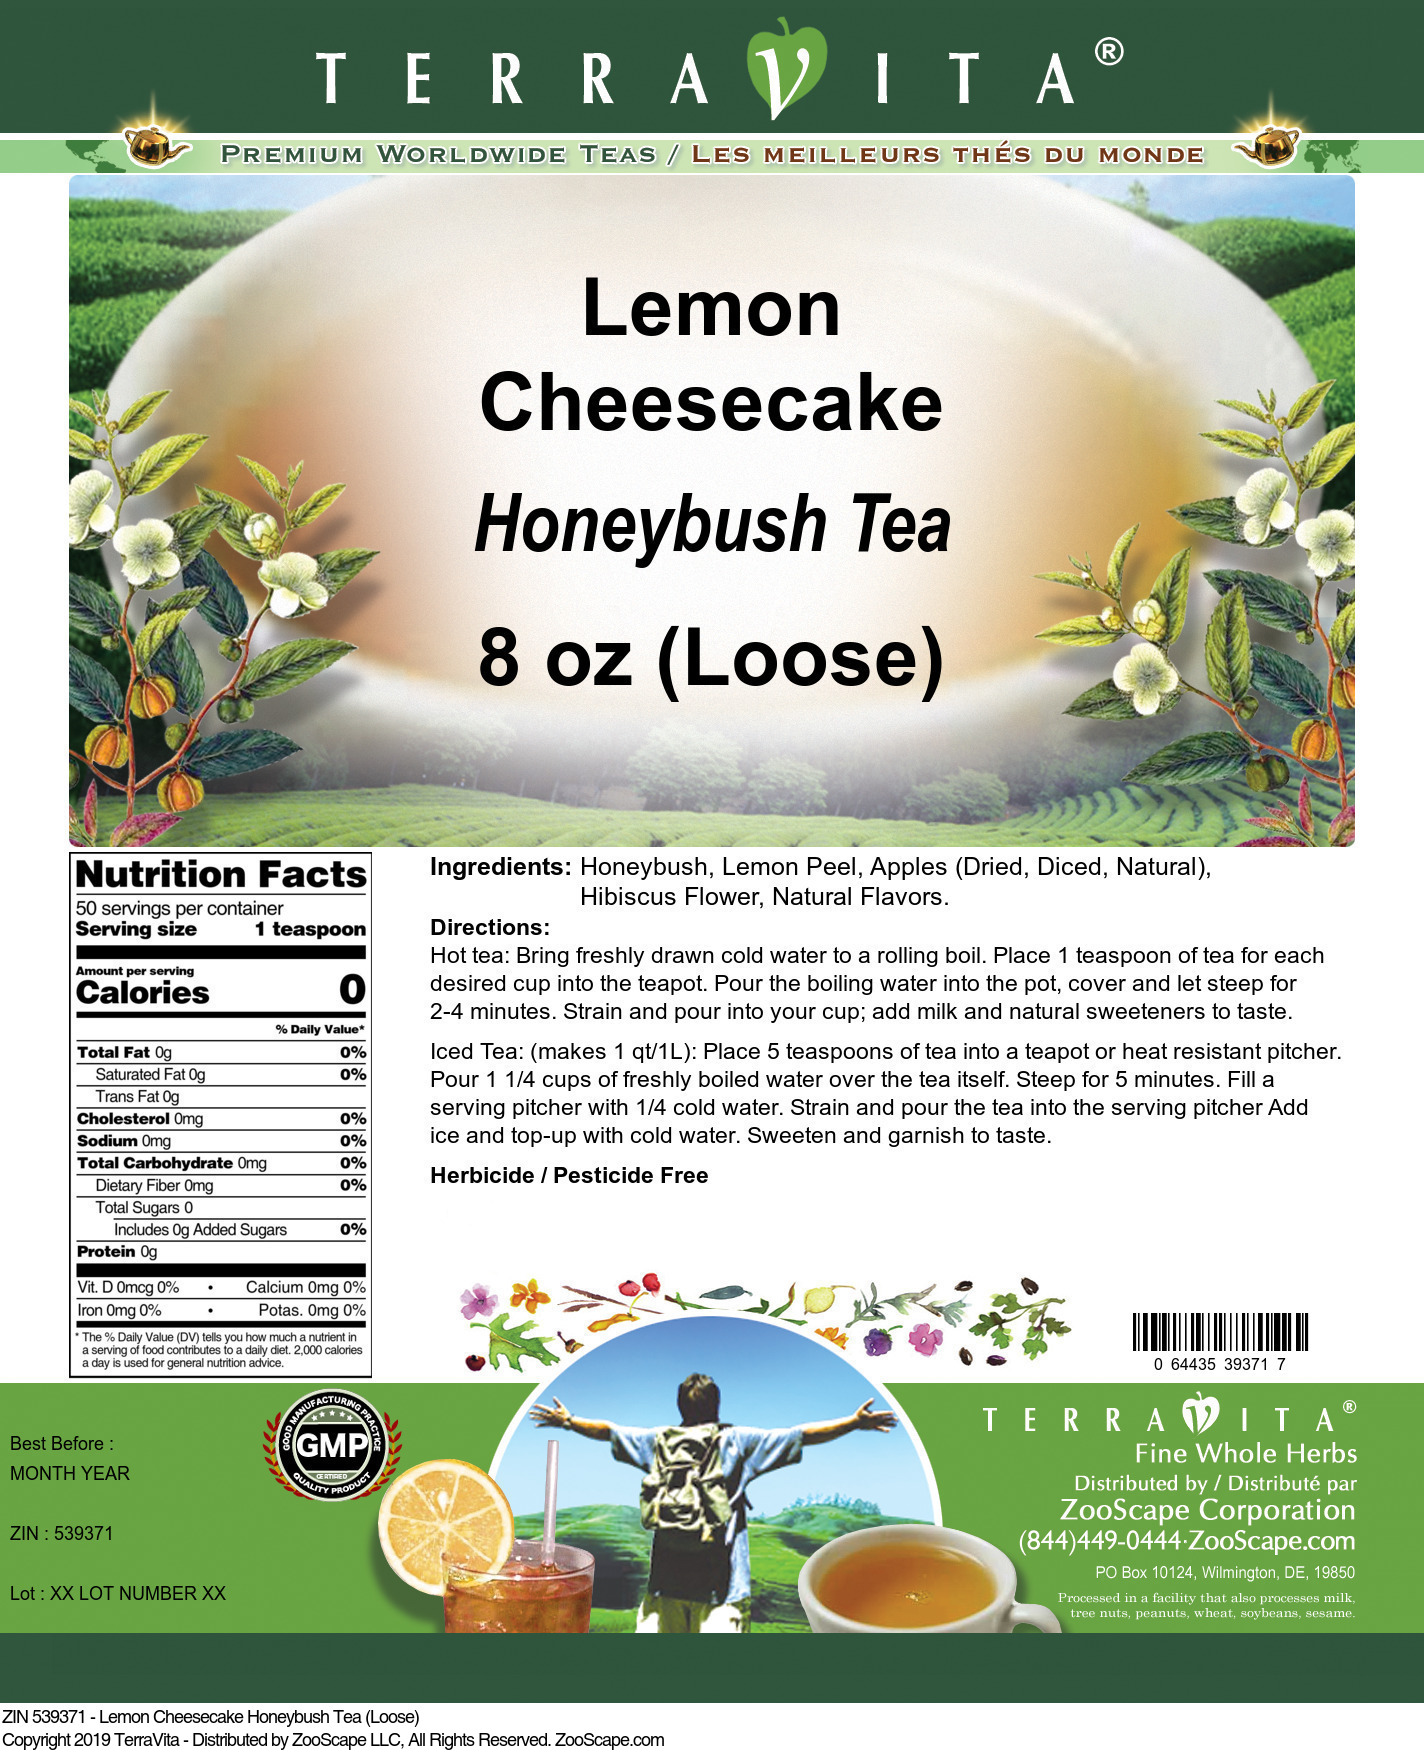 Lemon Cheesecake Honeybush Tea (Loose) - Label